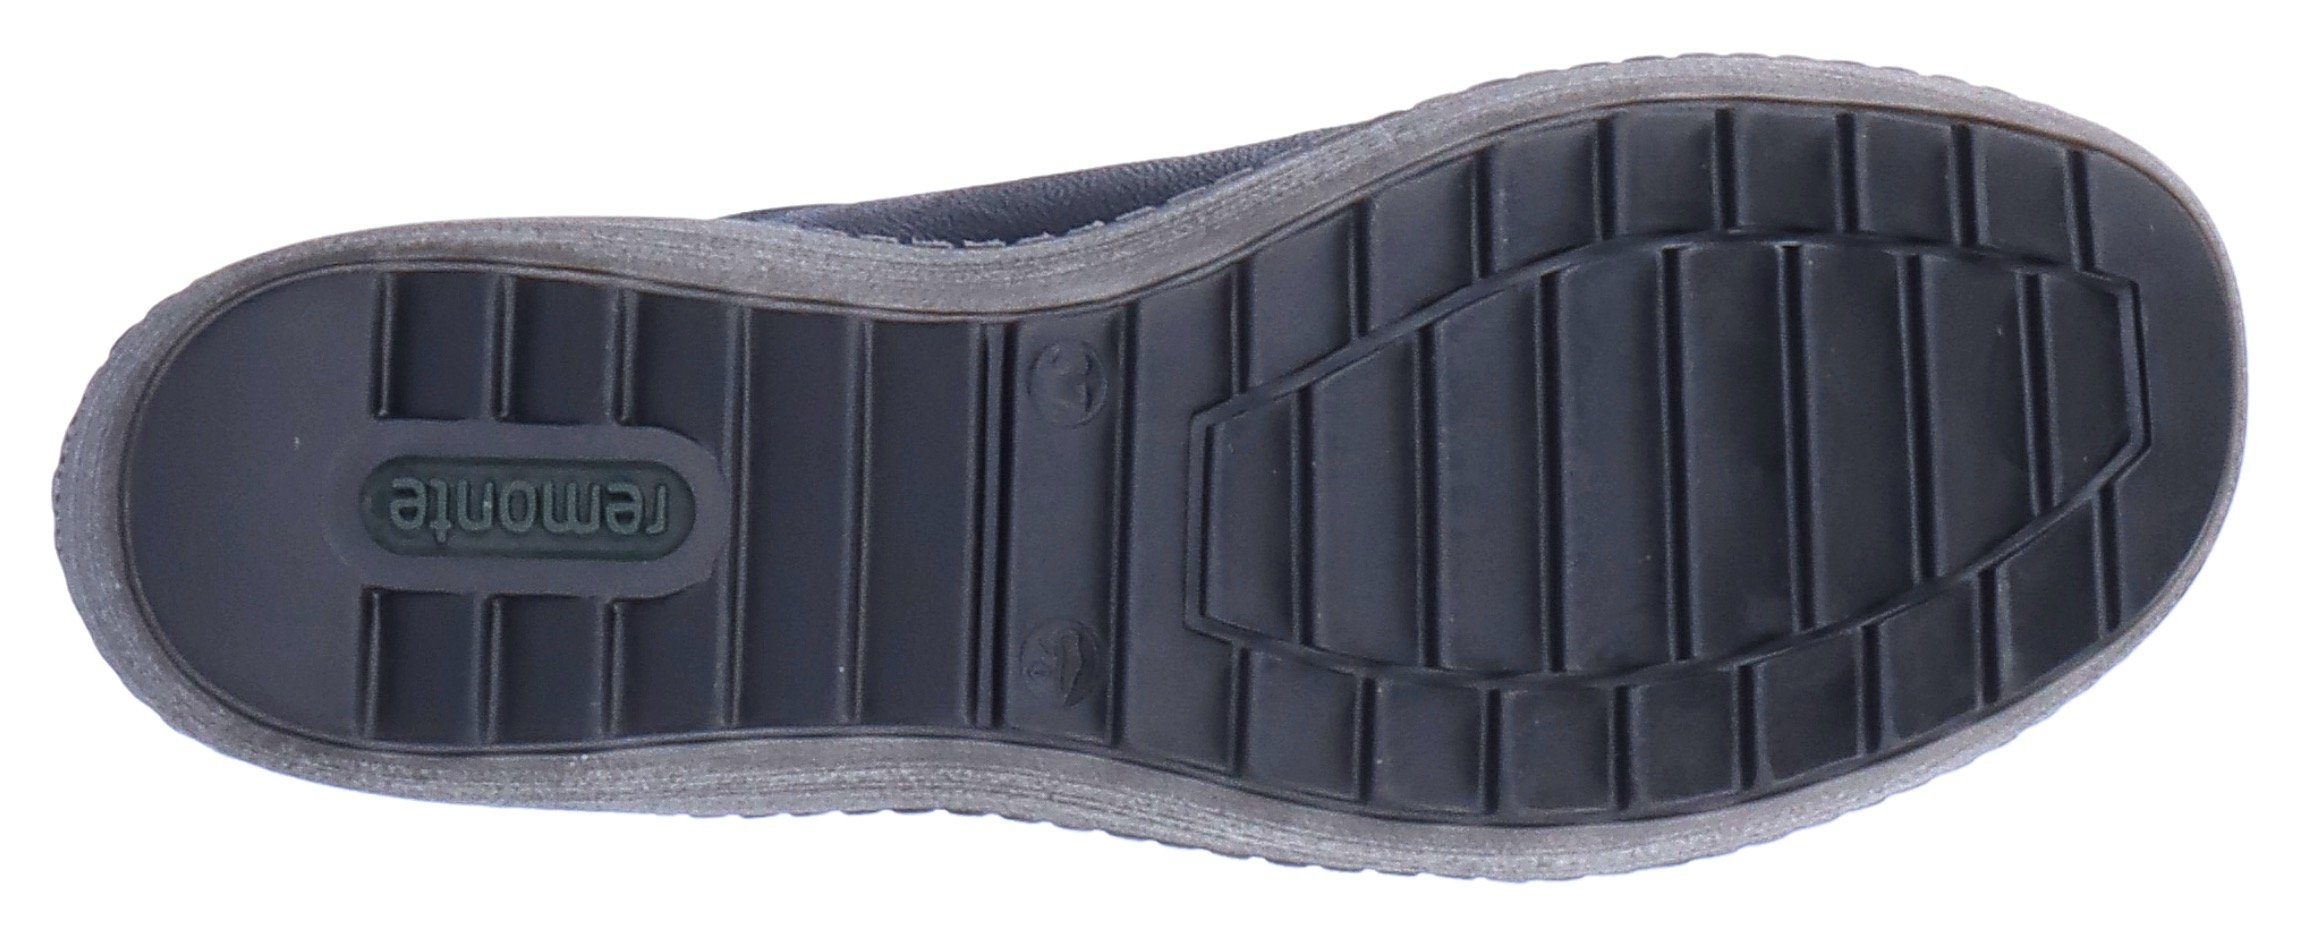 Schnürschuh mit schwarz-silberfarben Remonte Tex-Ausstattung